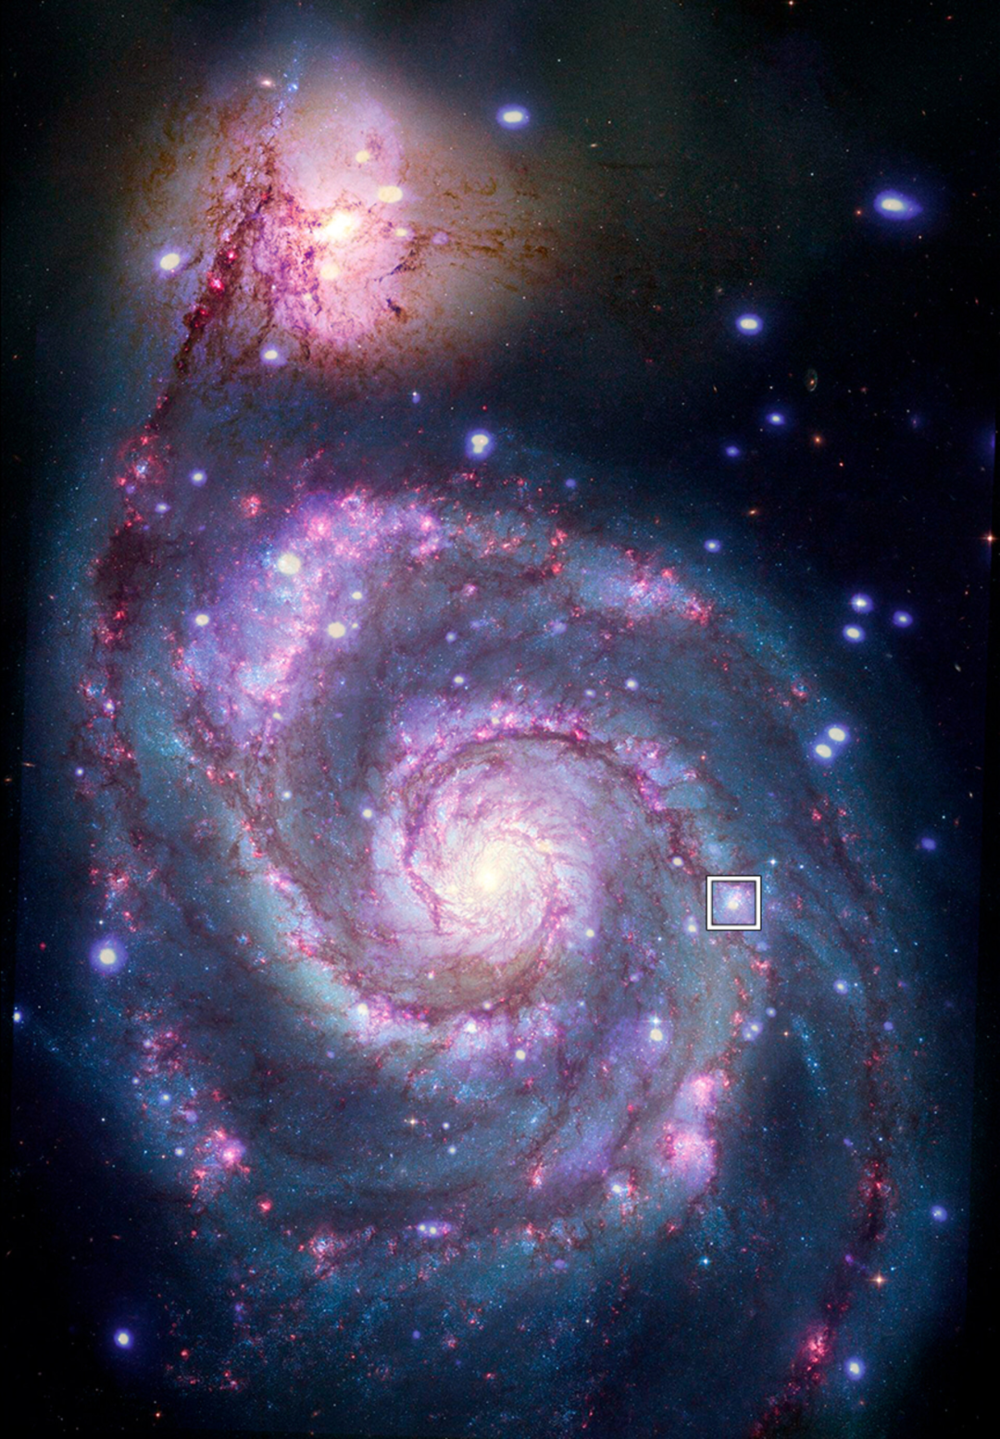  星系M51，由于其独特的外形，M51也常被称为涡状星系。图中方框处显示的为新发现的候选系外行星所在的位置。| 图片来源：X-ray: NASA/CXC/SAO/R. DiStefano, et al.; Optical: NASA/ESA/STScI/Grendler<br label=图片备注 class=text-img-note>